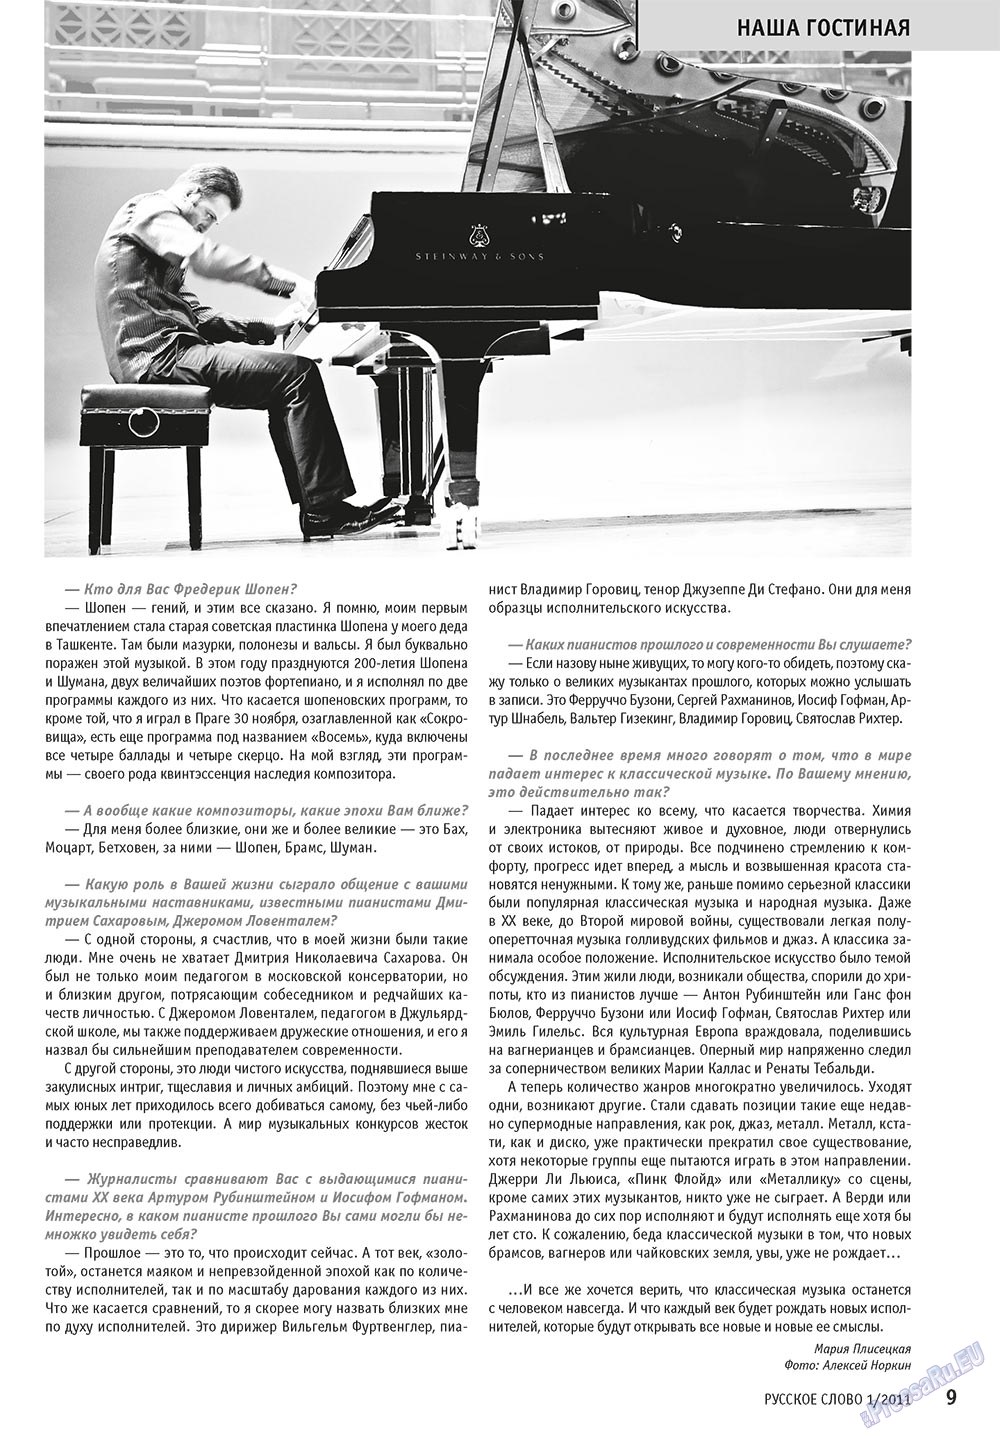 Русское слово, журнал. 2011 №1 стр.11